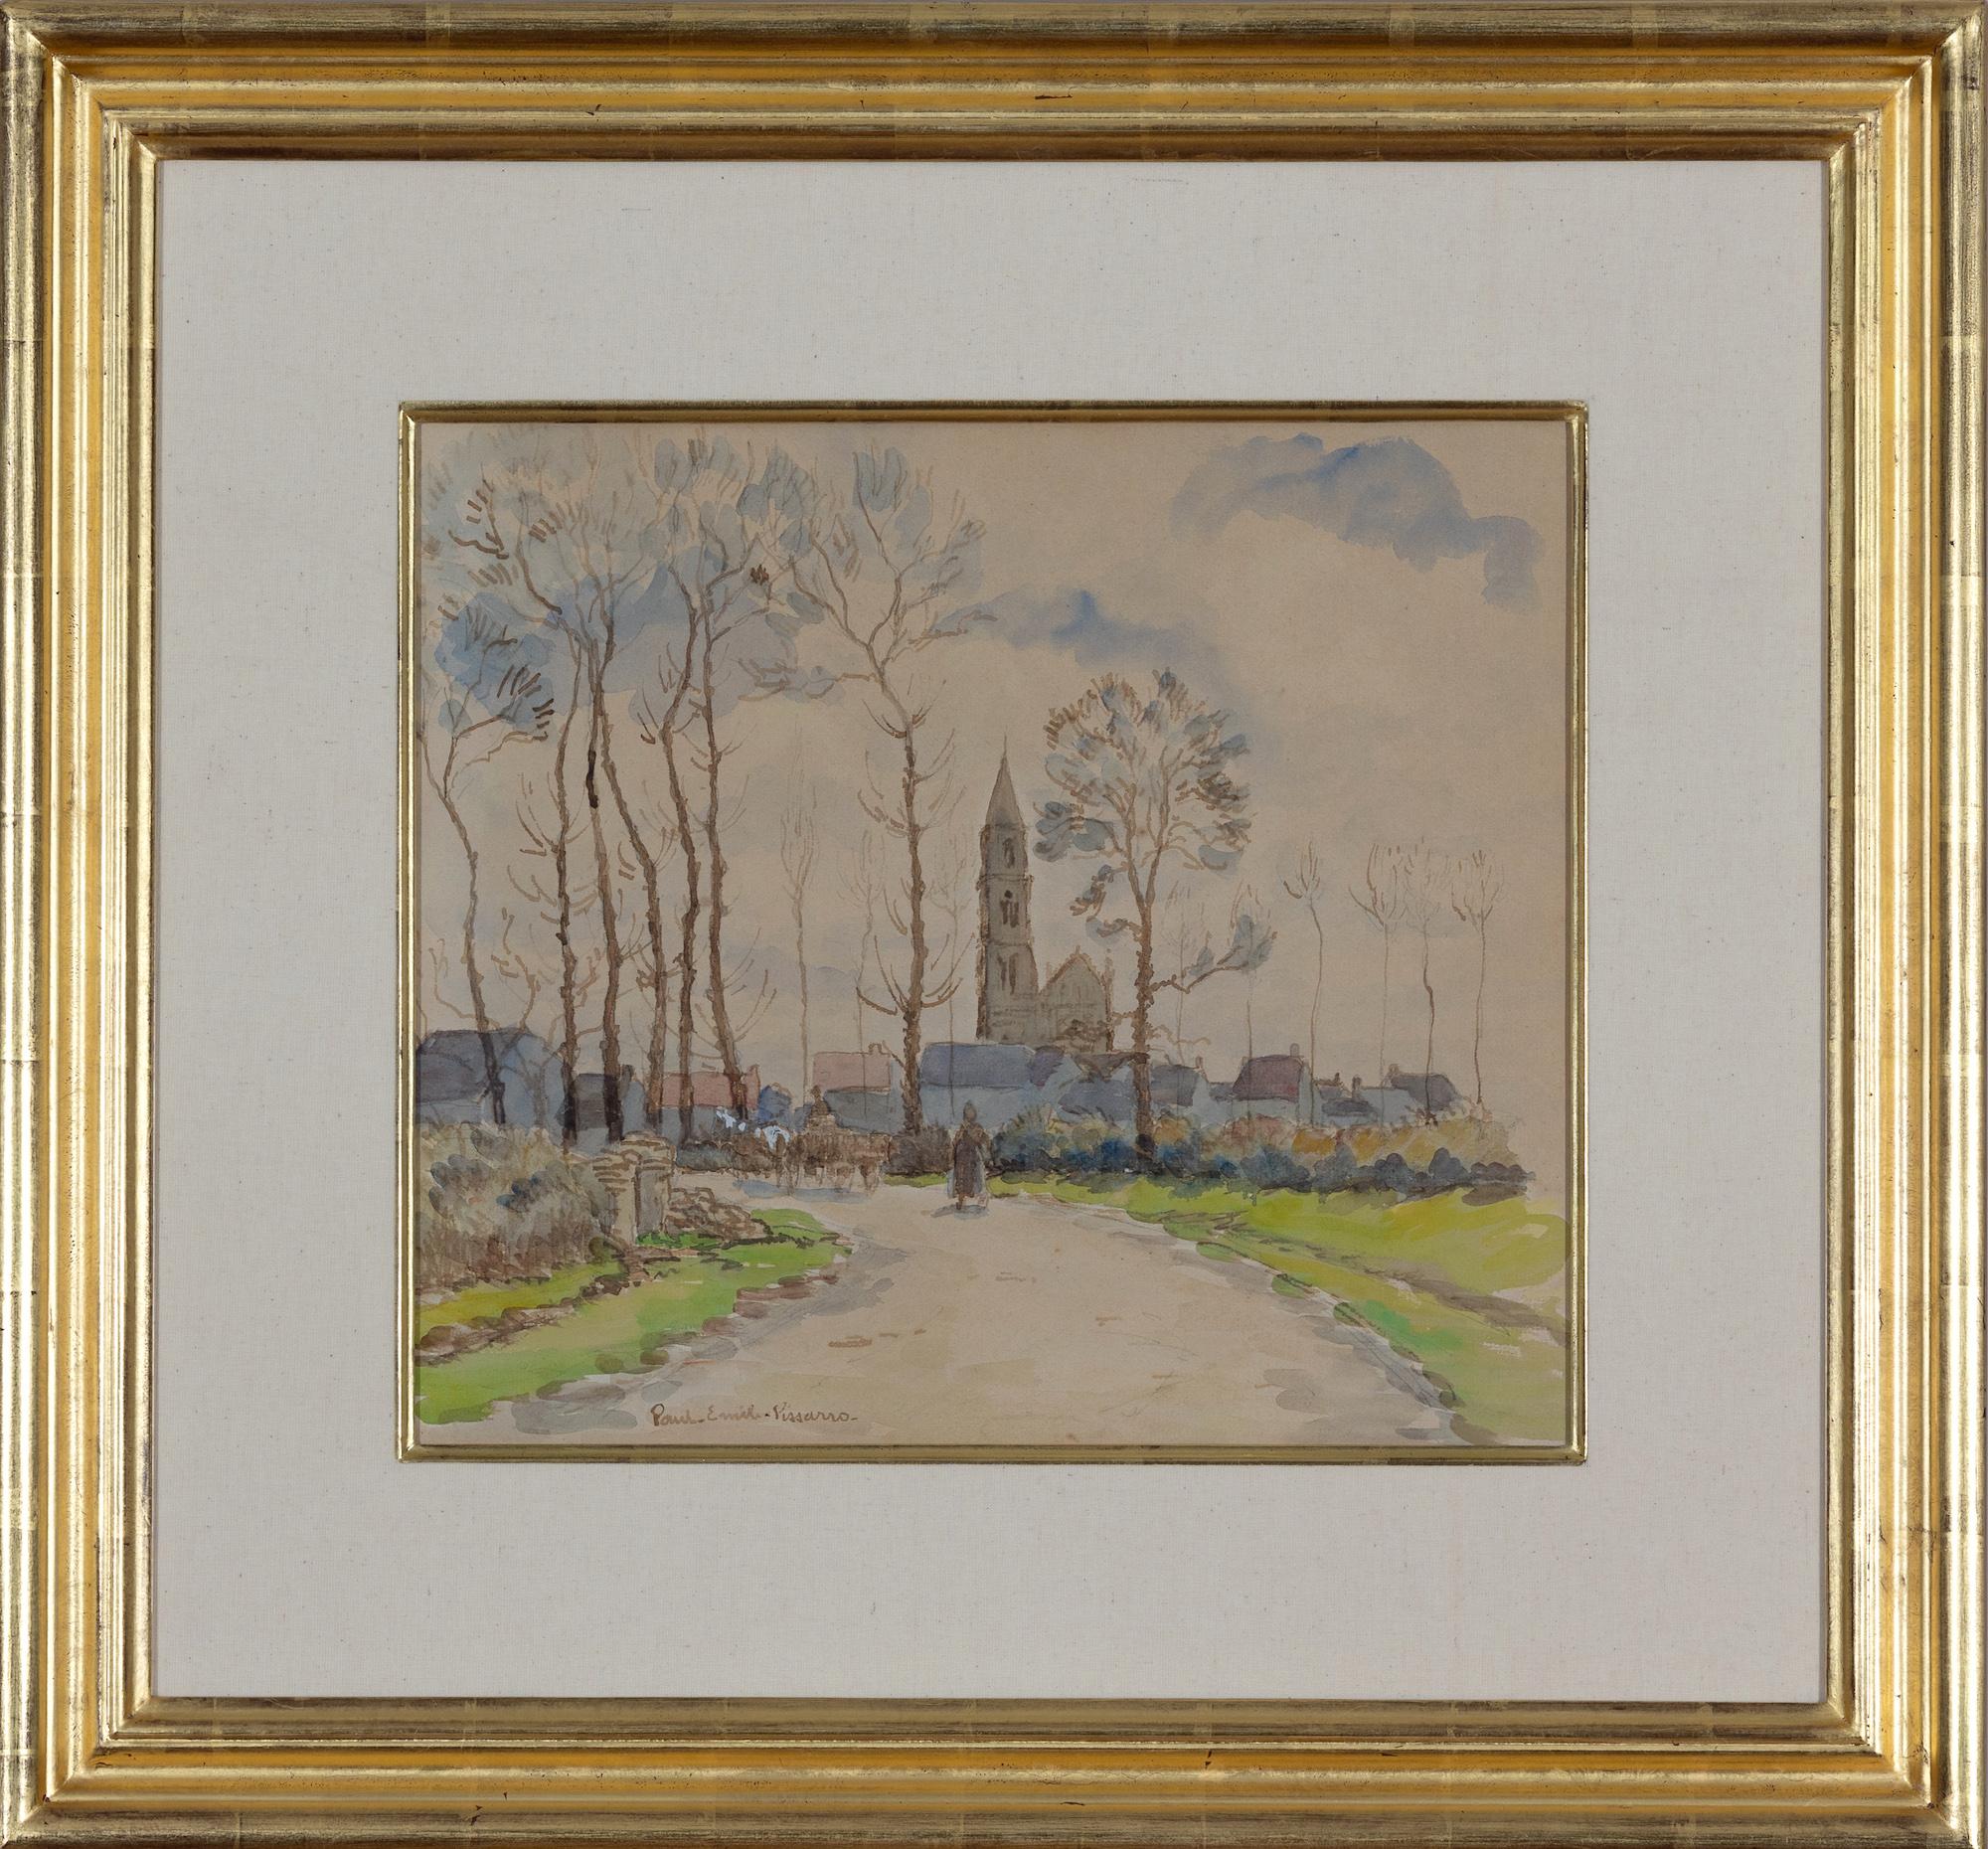 Promeneuse sur un chemin by Paulémile Pissarro - Work on paper, watercolour - Art by Paul Emile Pissarro